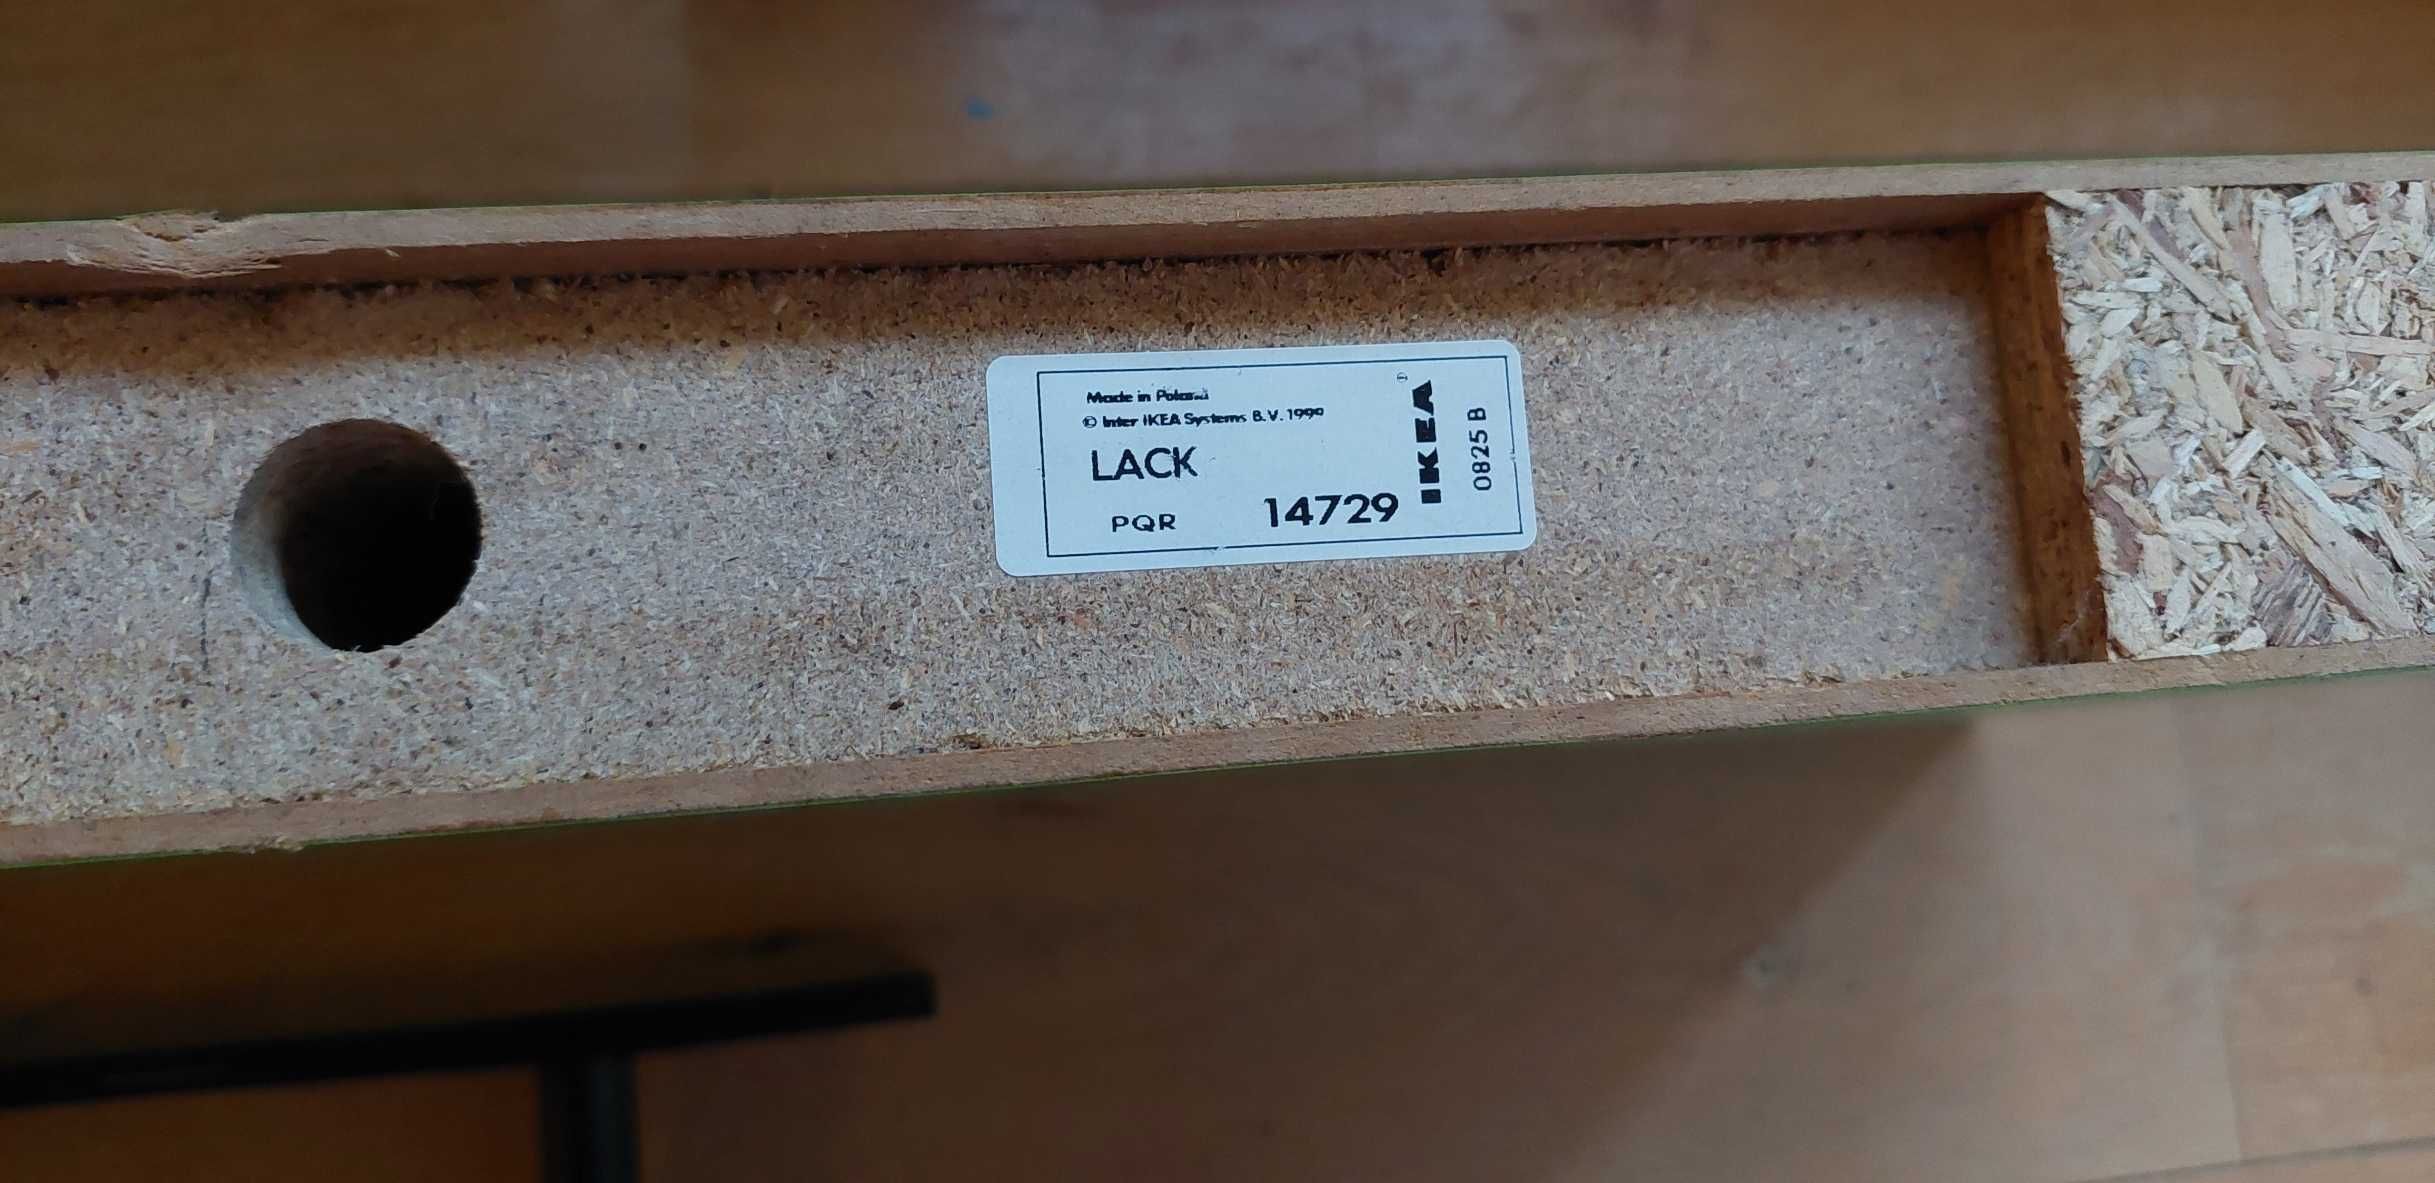 Zielona półka ścienna Lack, od Ikea